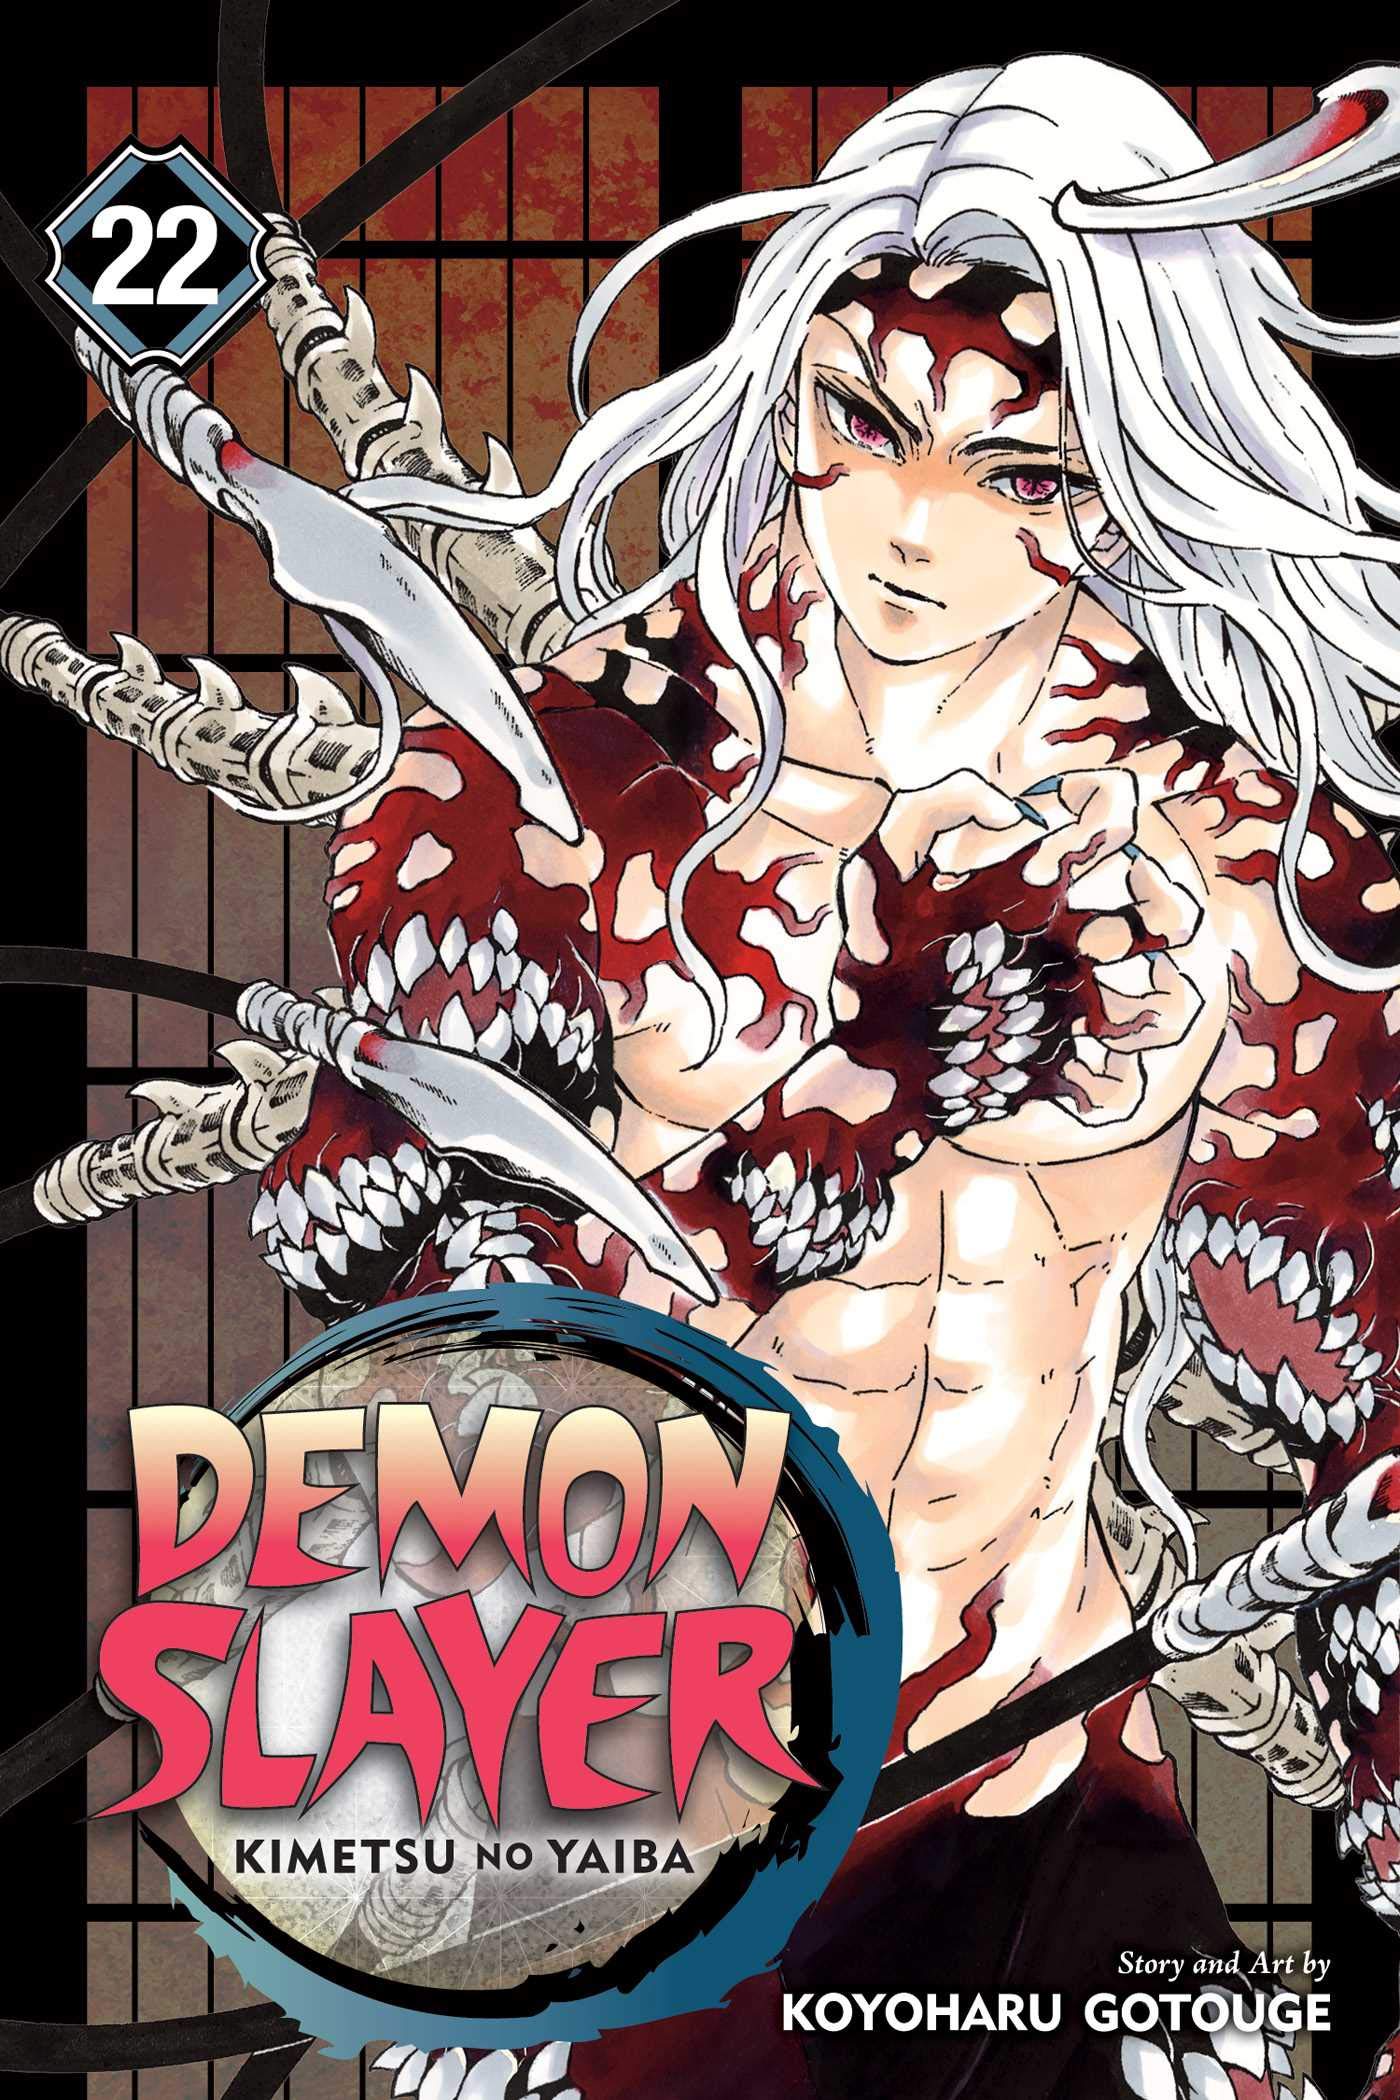 Demon Slayer: Kimetsu no Yaiba - Volume 22 | Koyoharu Gotouge